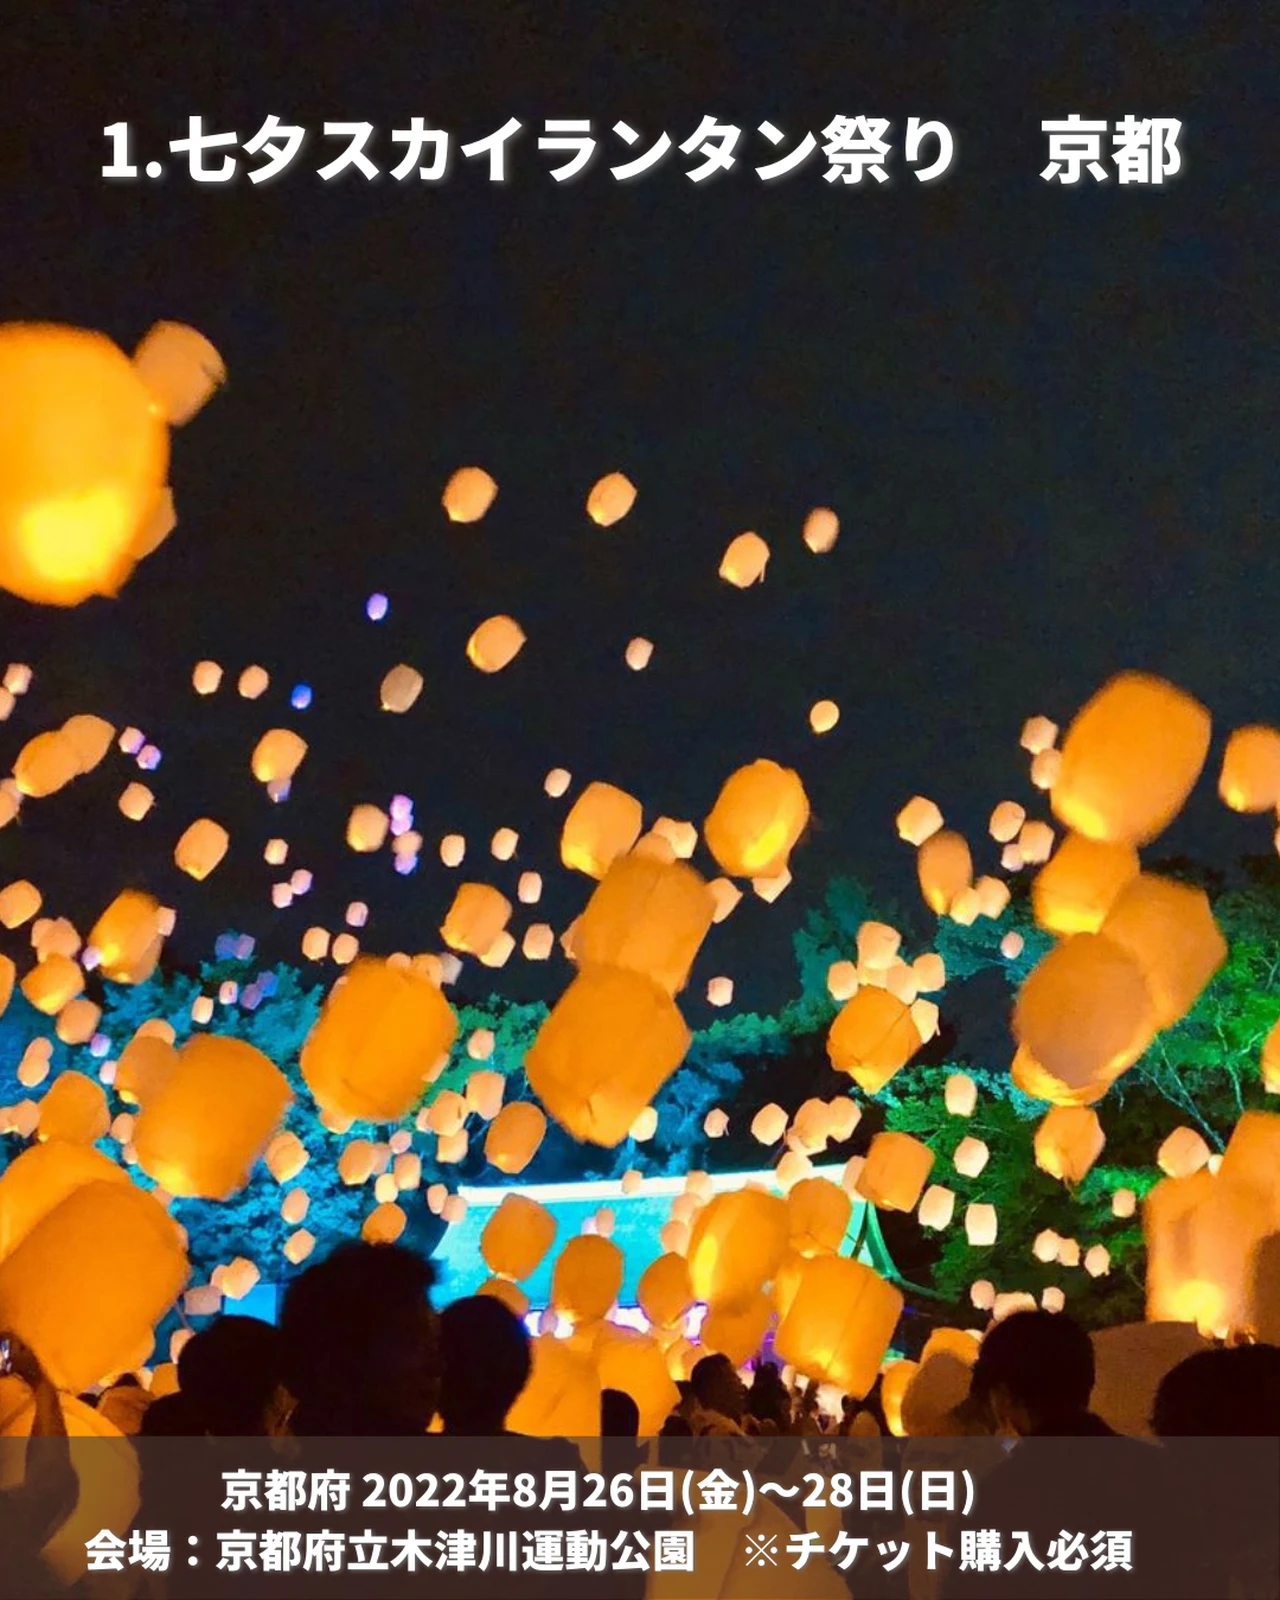 京都七夕スカイランタン祭り 8月26日 | mentonis-group.gr